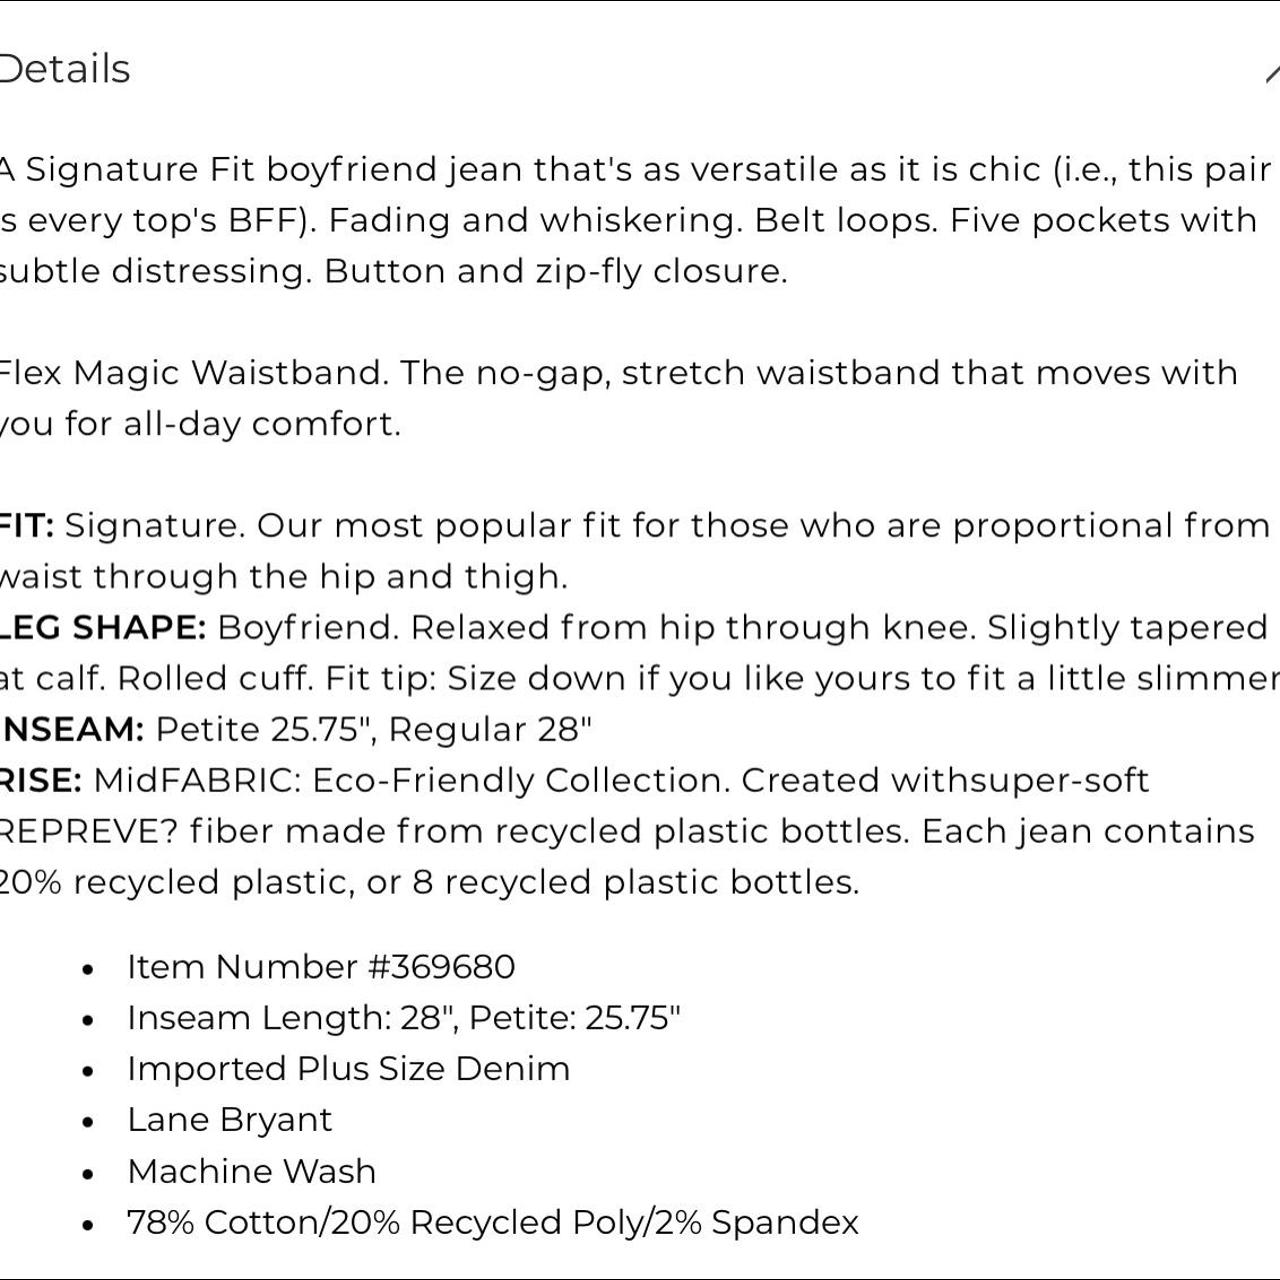 Lane Bryant Boyfriend Jeans 18 Flex Magic Waistband Signature Fit Mid-Rise  Plus